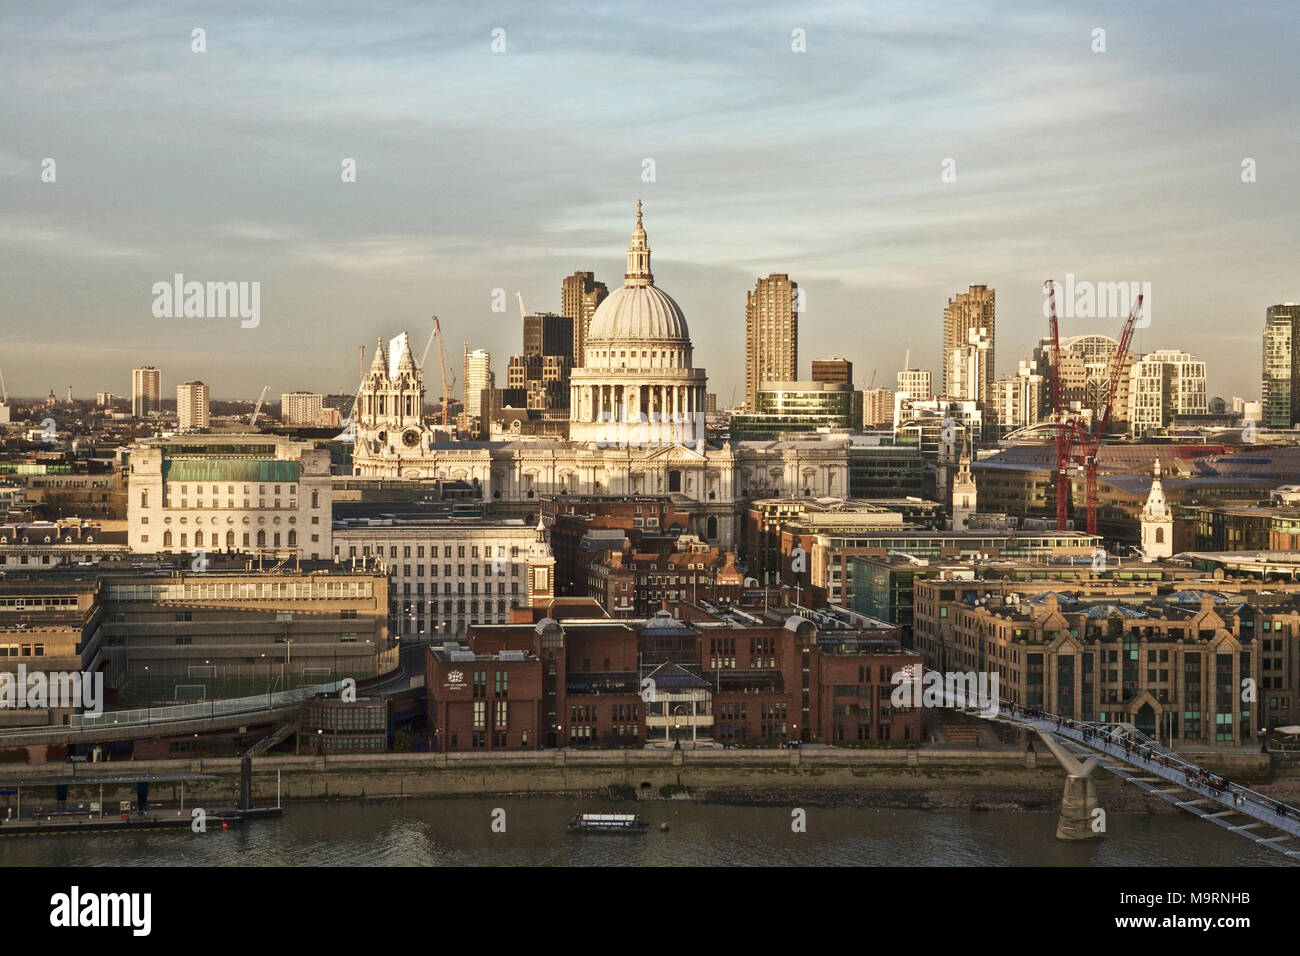 Londres : l'architecture de la Cathédrale St Paul Londres paysage urbain. Banque D'Images